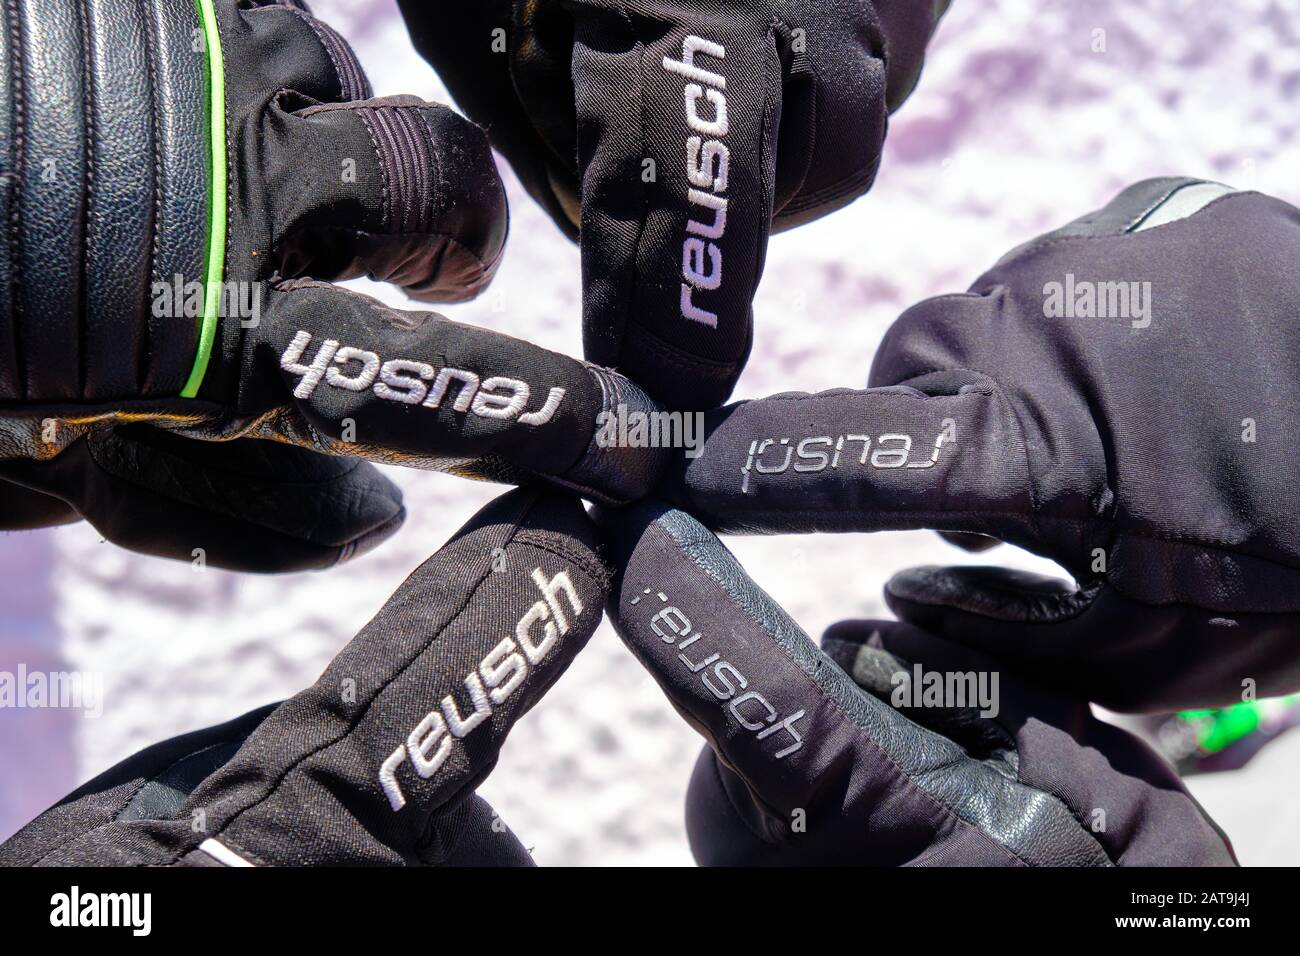 Ciampac, Italia - 24 gennaio 2020: Guanti neri Reusch che puntano cinque dita indice in una formazione a stella, su una pista da sci a Dolimites, Italia, durante Win Foto Stock